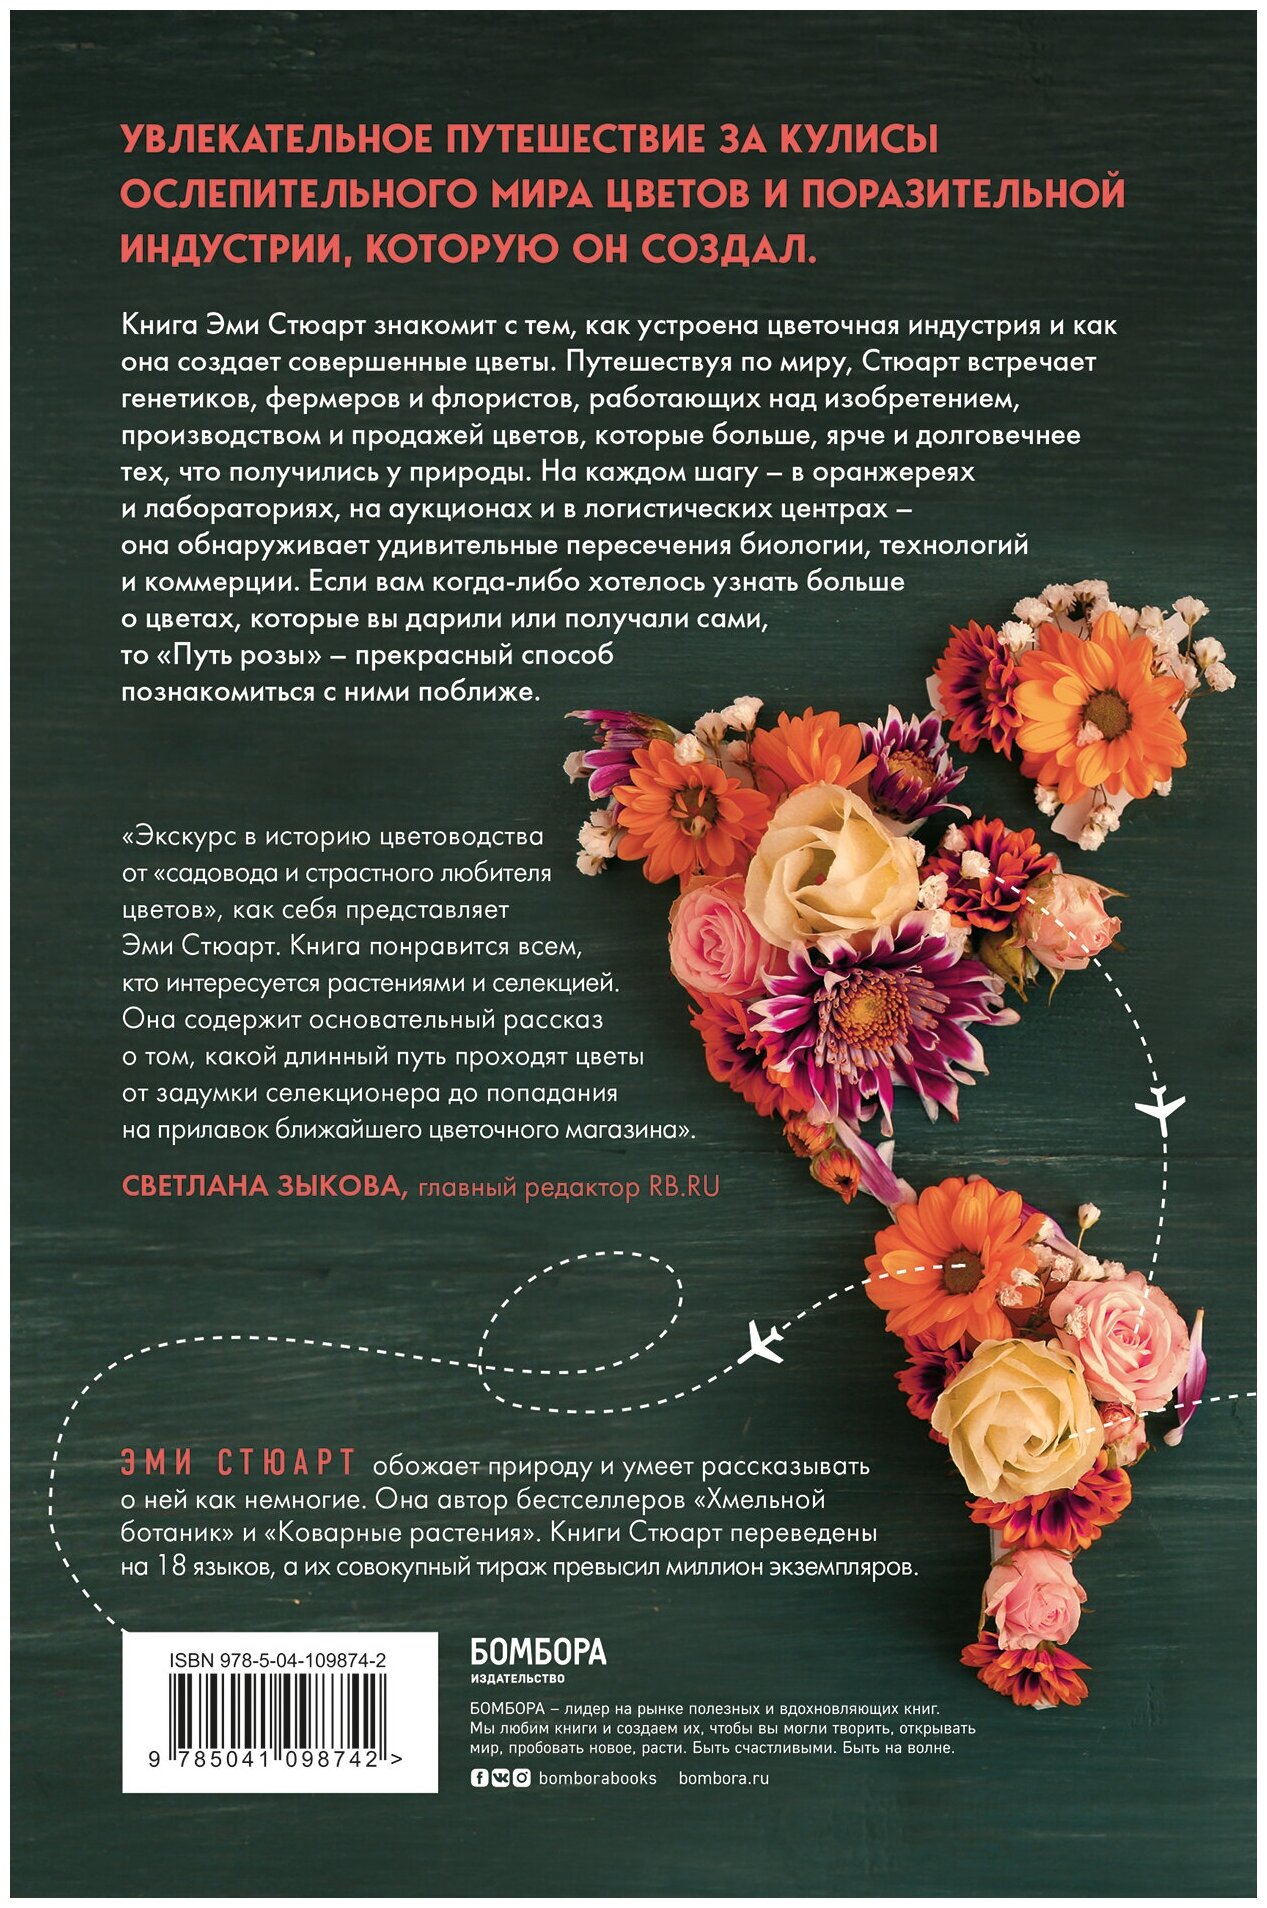 Путь розы. Внутри цветочного бизнеса: как выводят и продают цветы, которые не сумела создать природа - фото №5